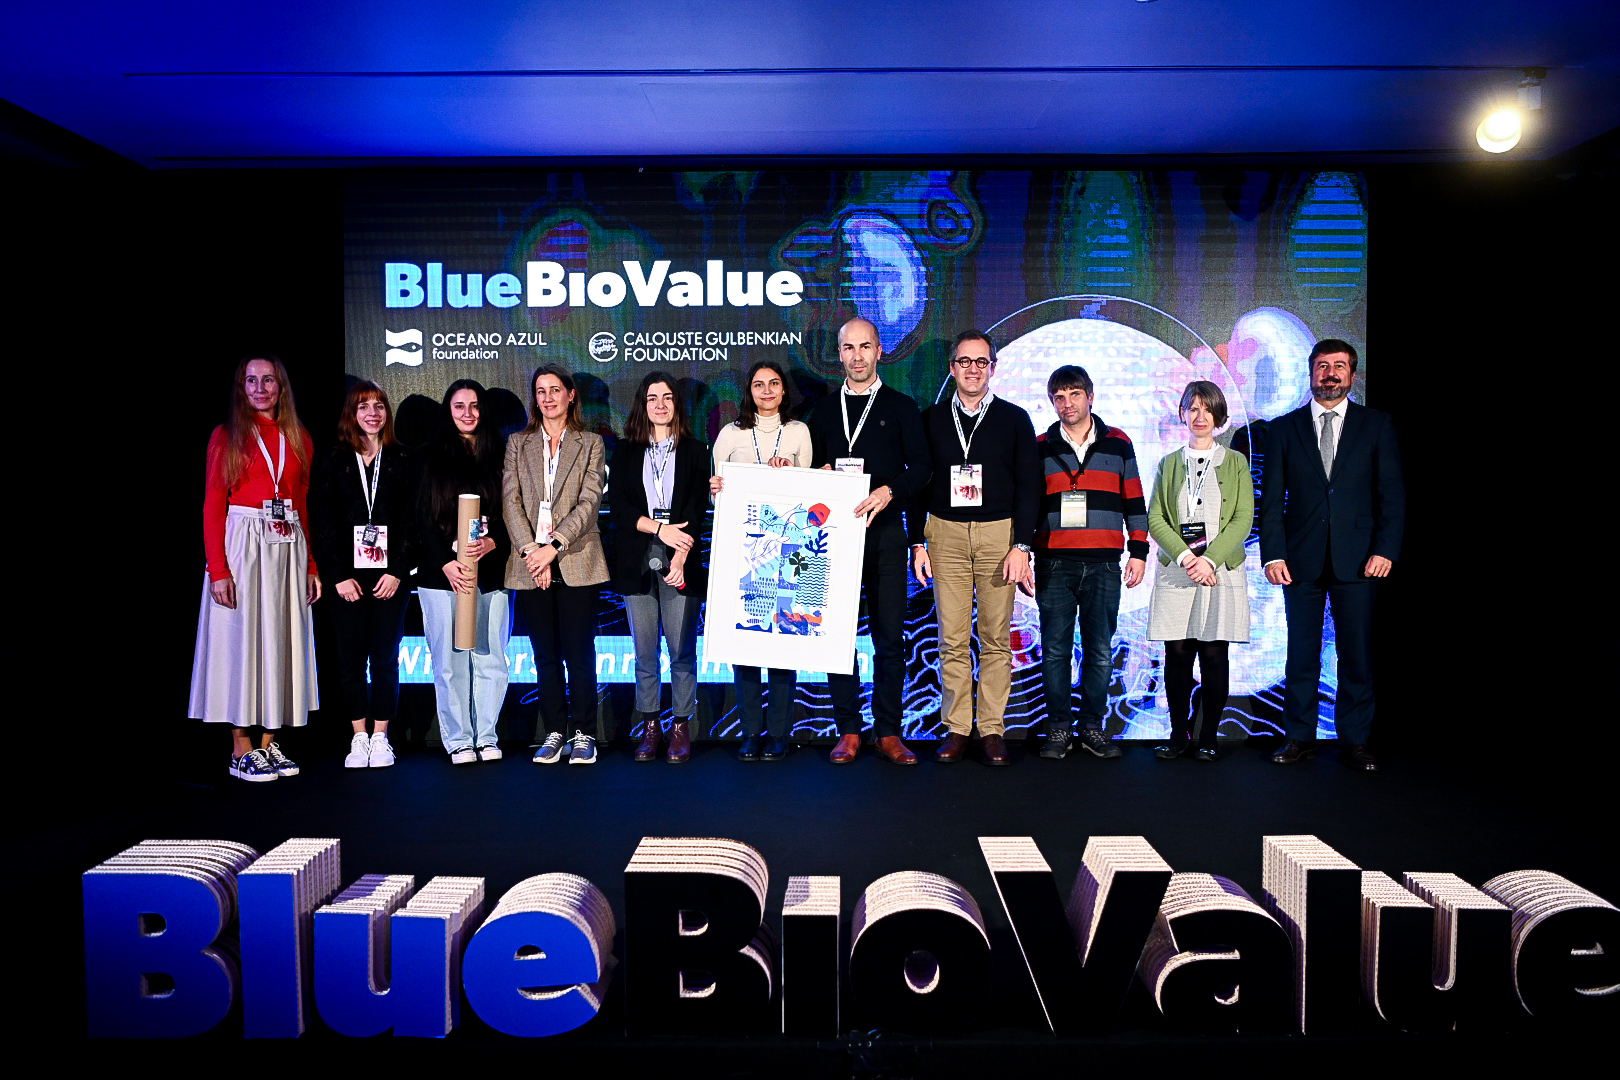 Programa Blue Bio Value premeia investigação da U.Porto em bioeconomia azul